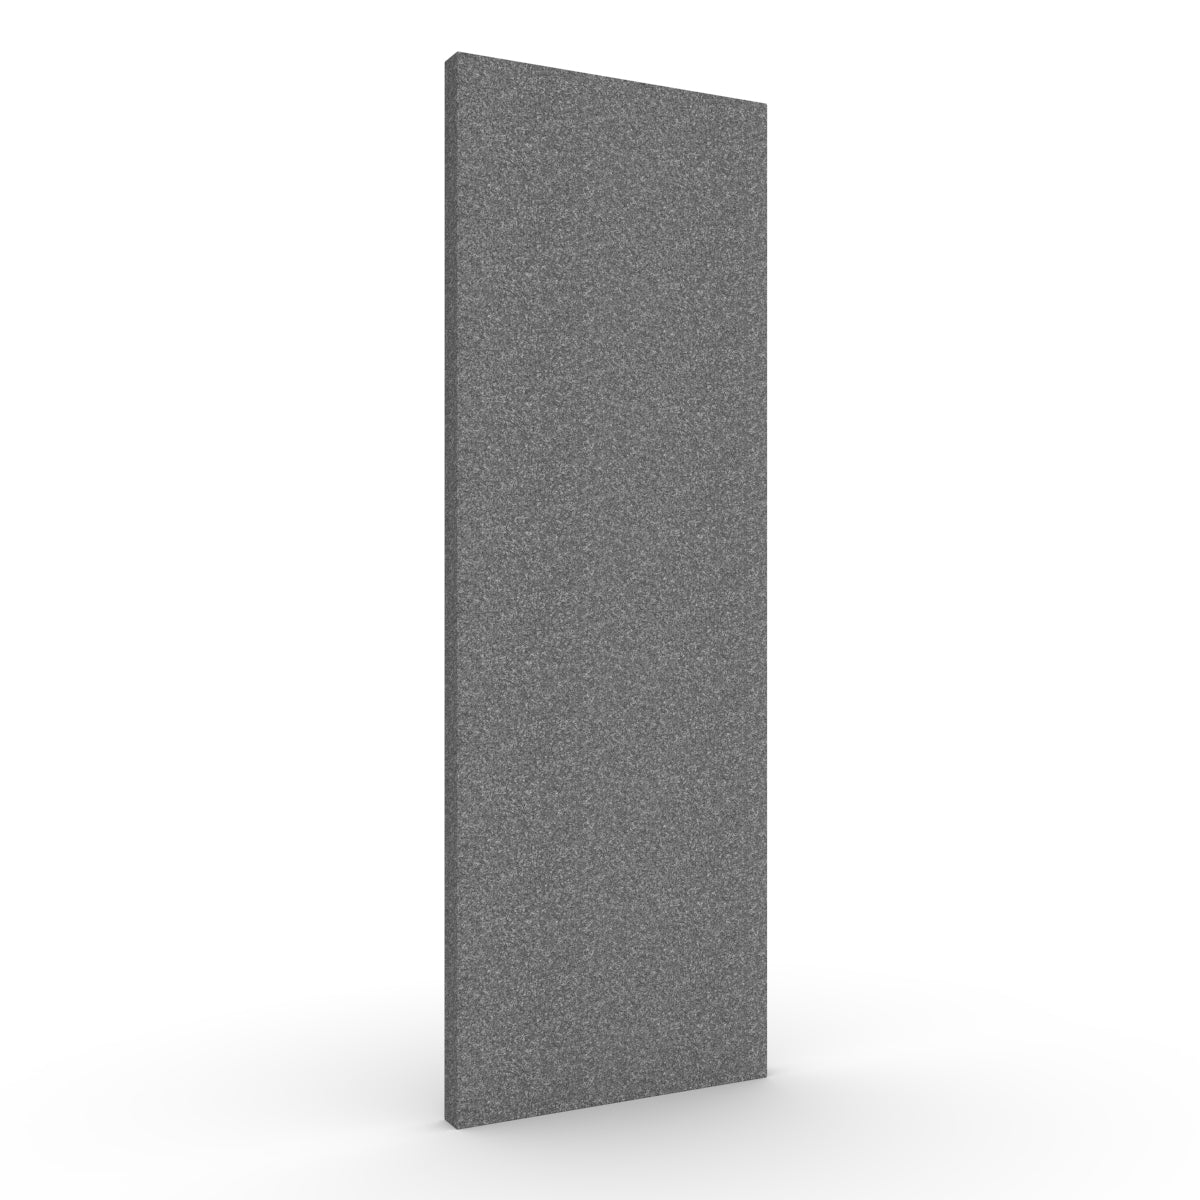 Basic wall sound absorber in dark grey. Size 58cmx174cm. Akustikkplater og lyddemping vegg